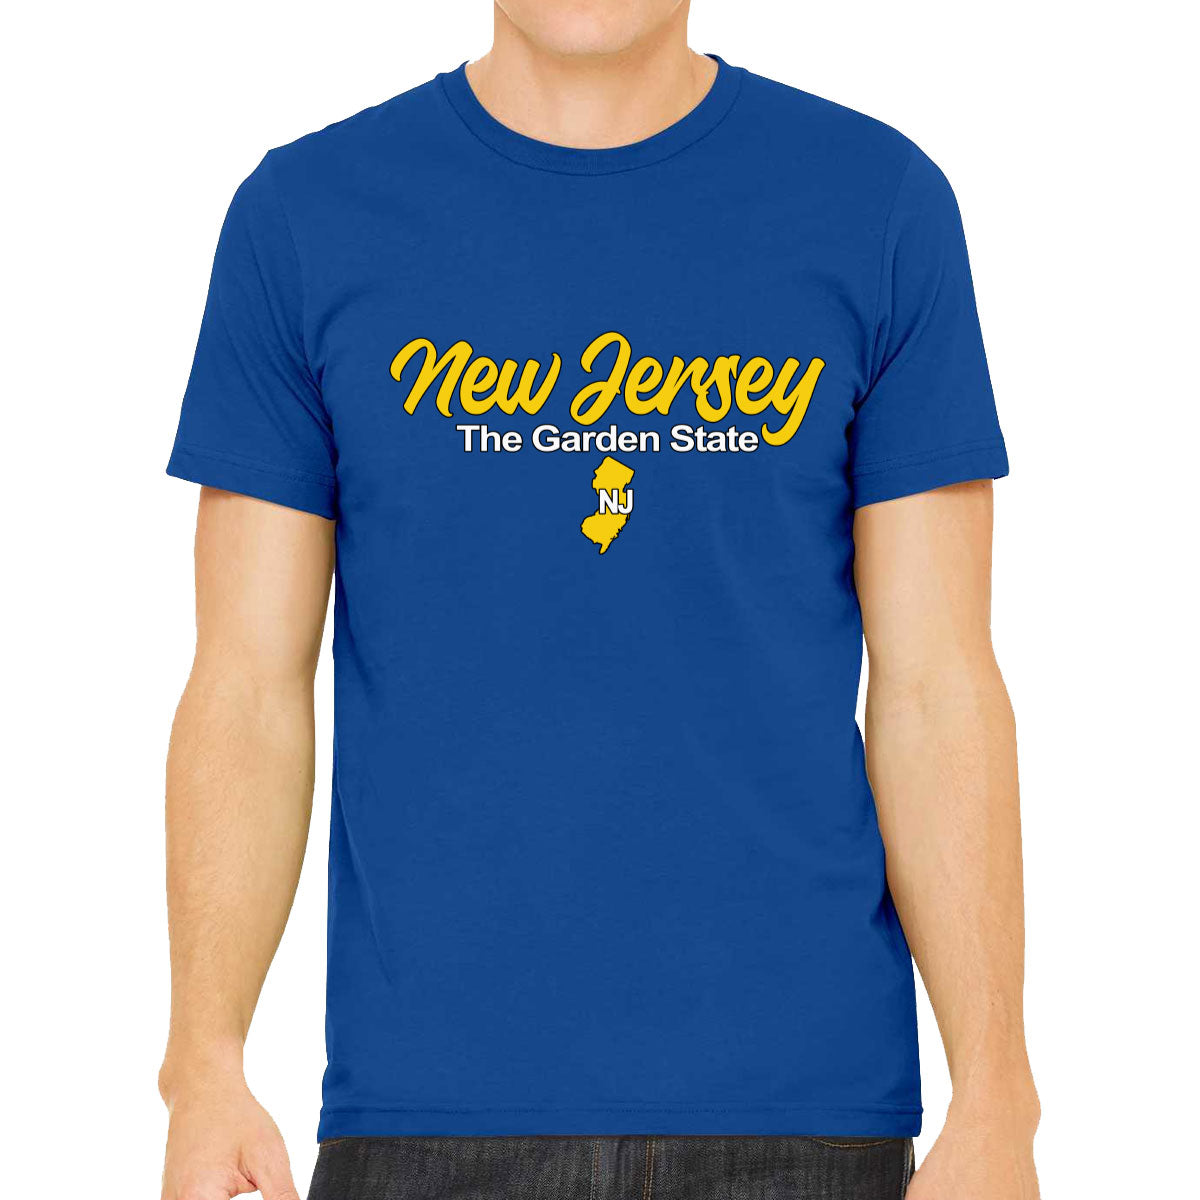 New Jersey The Garden State Men's T-shirt